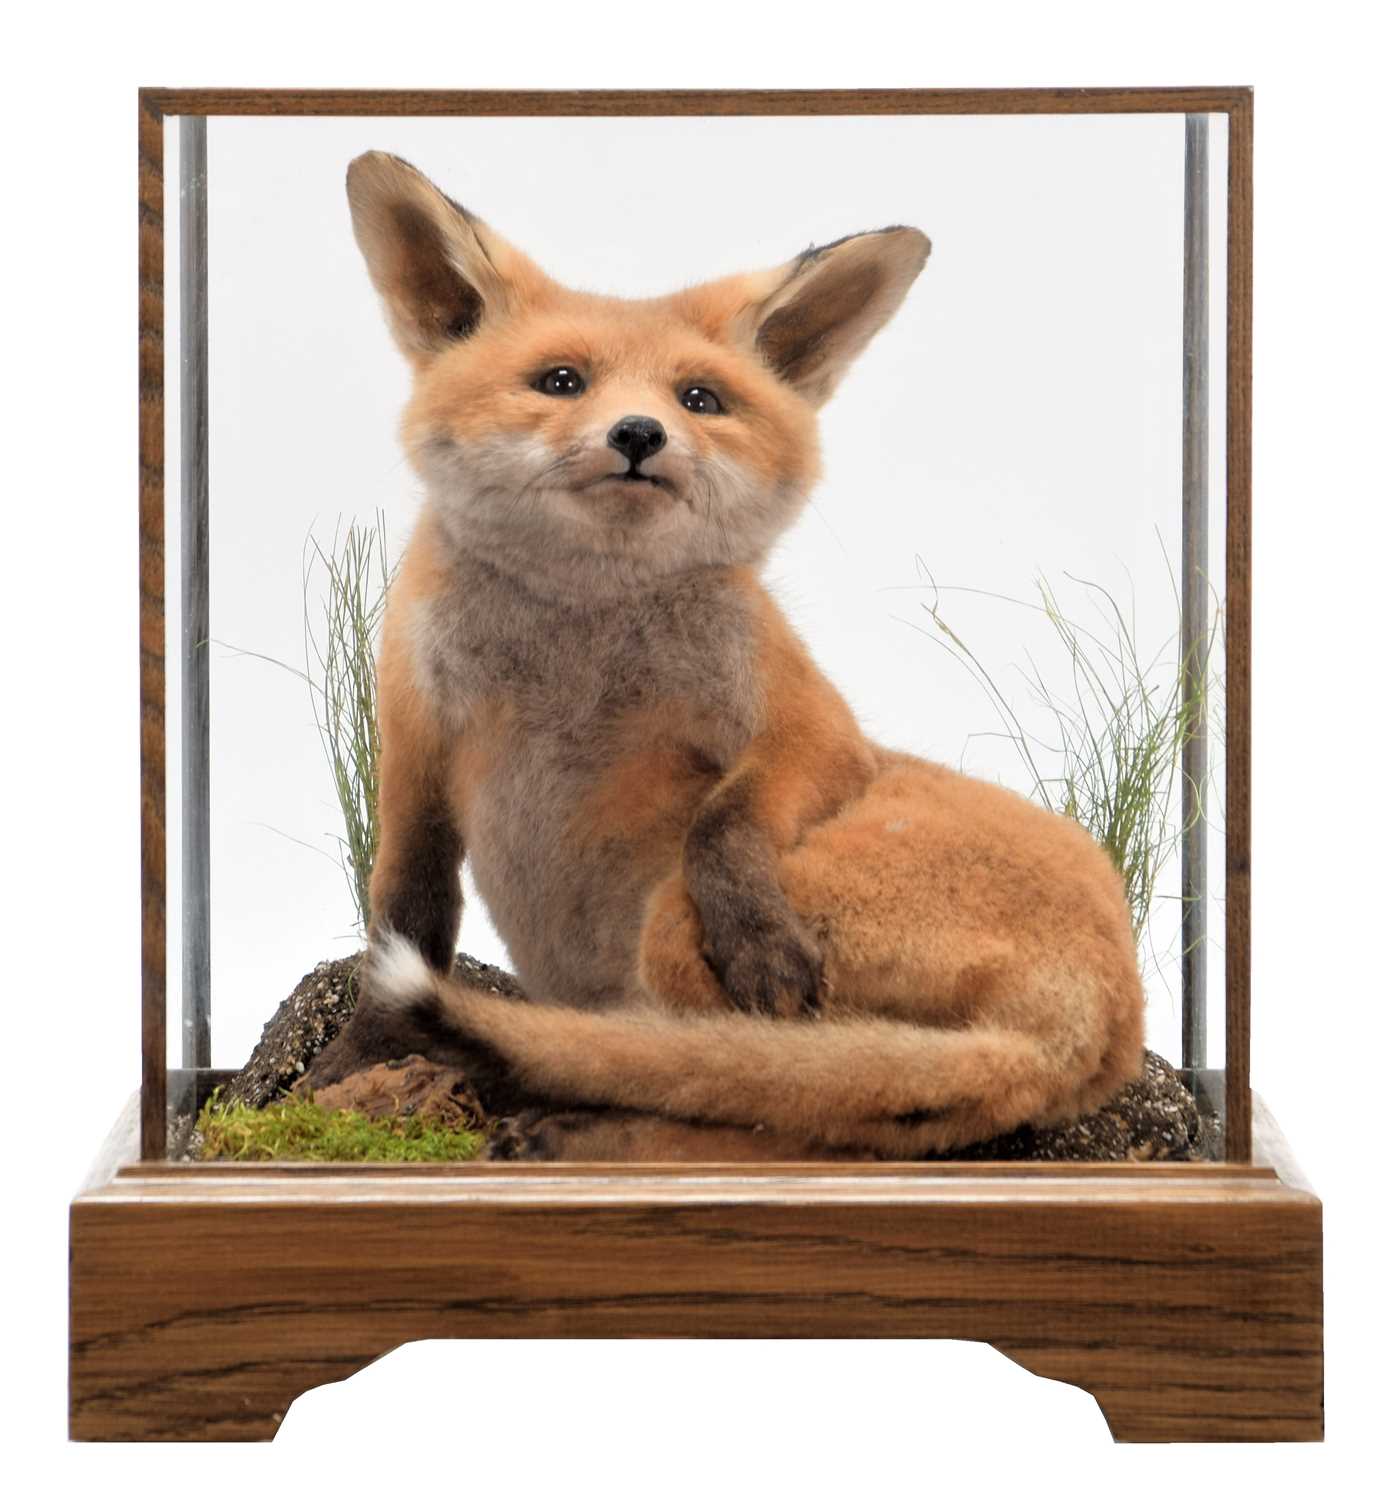 Taxidermy: A European Red Fox Cub (Vulpes vulpes), circa 21st century, a high quality Red Fox cub in